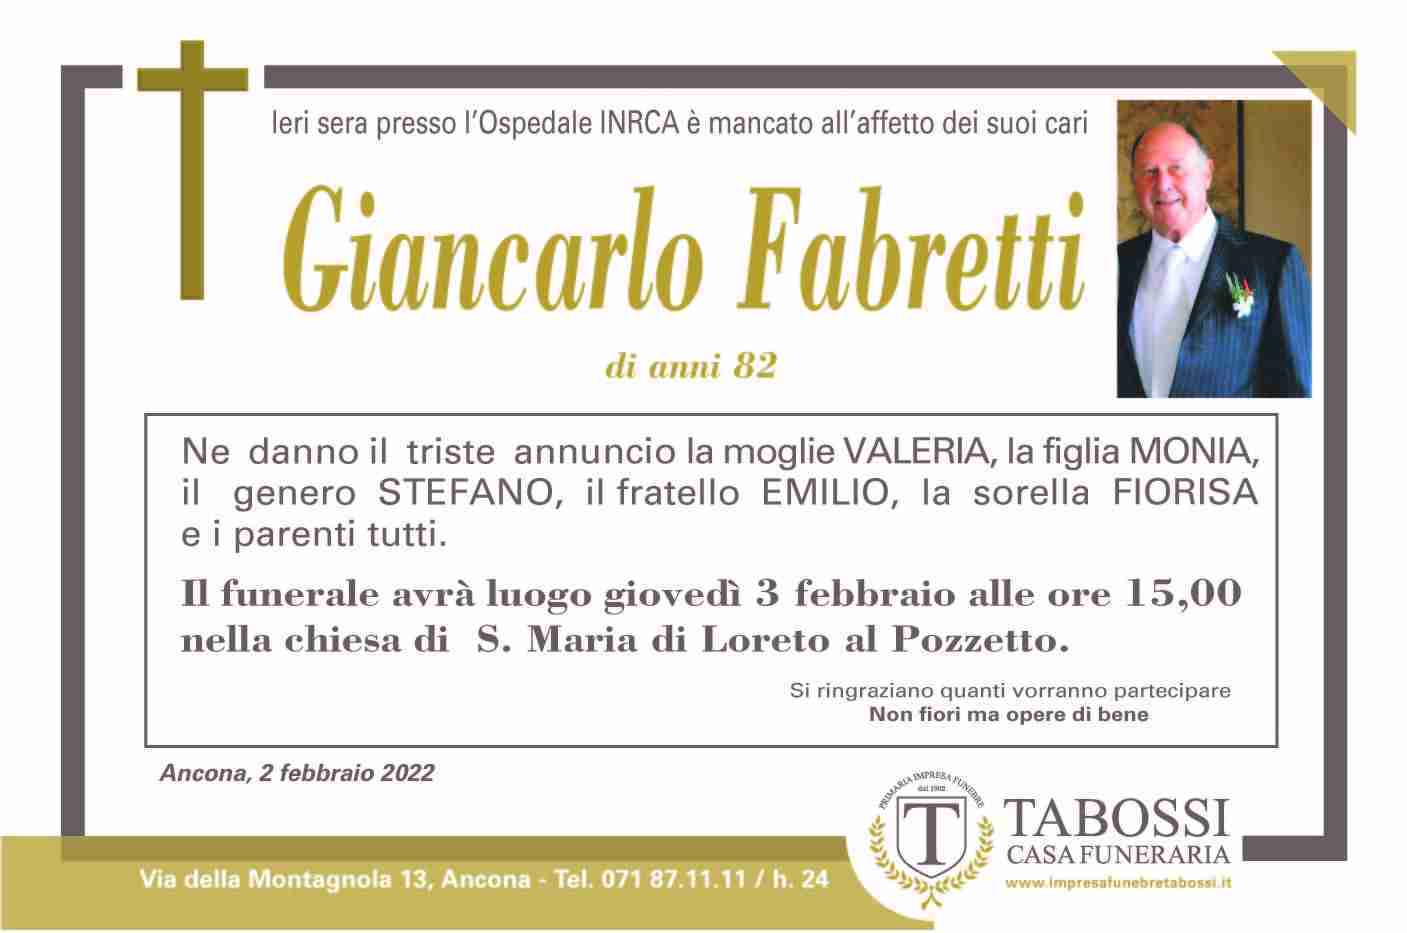 Giancarlo Fabretti